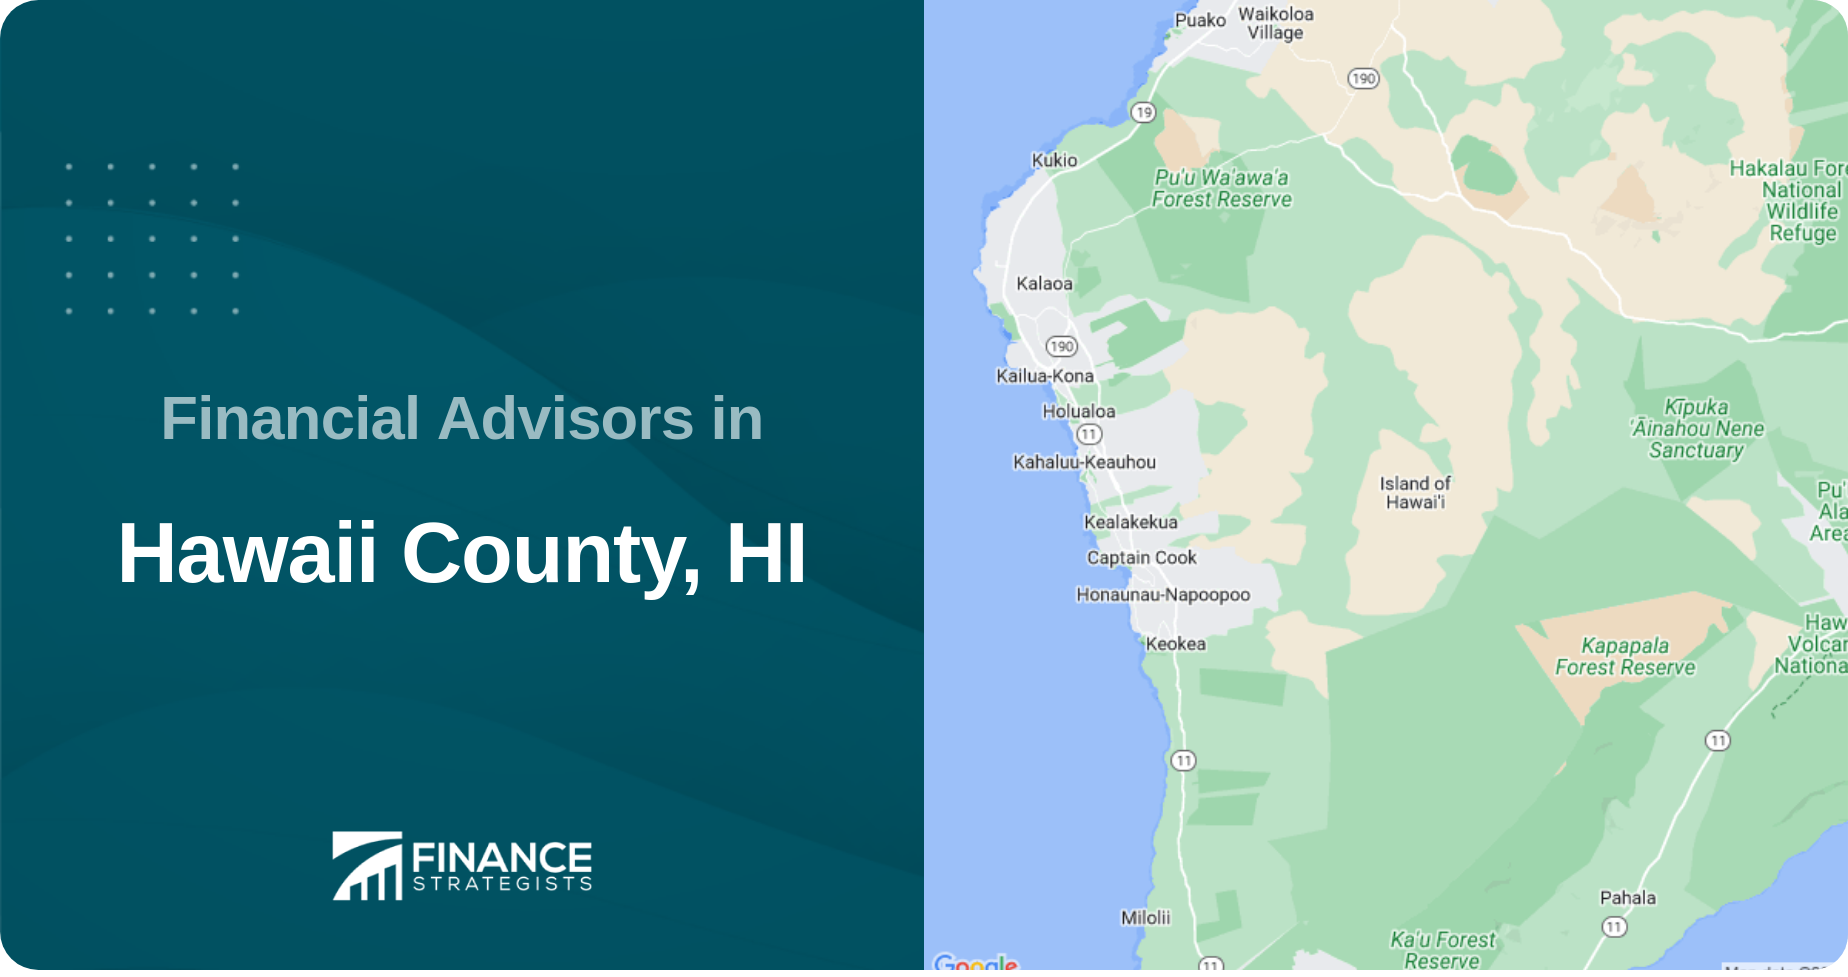 Financial Advisors in Hawaii County, HI